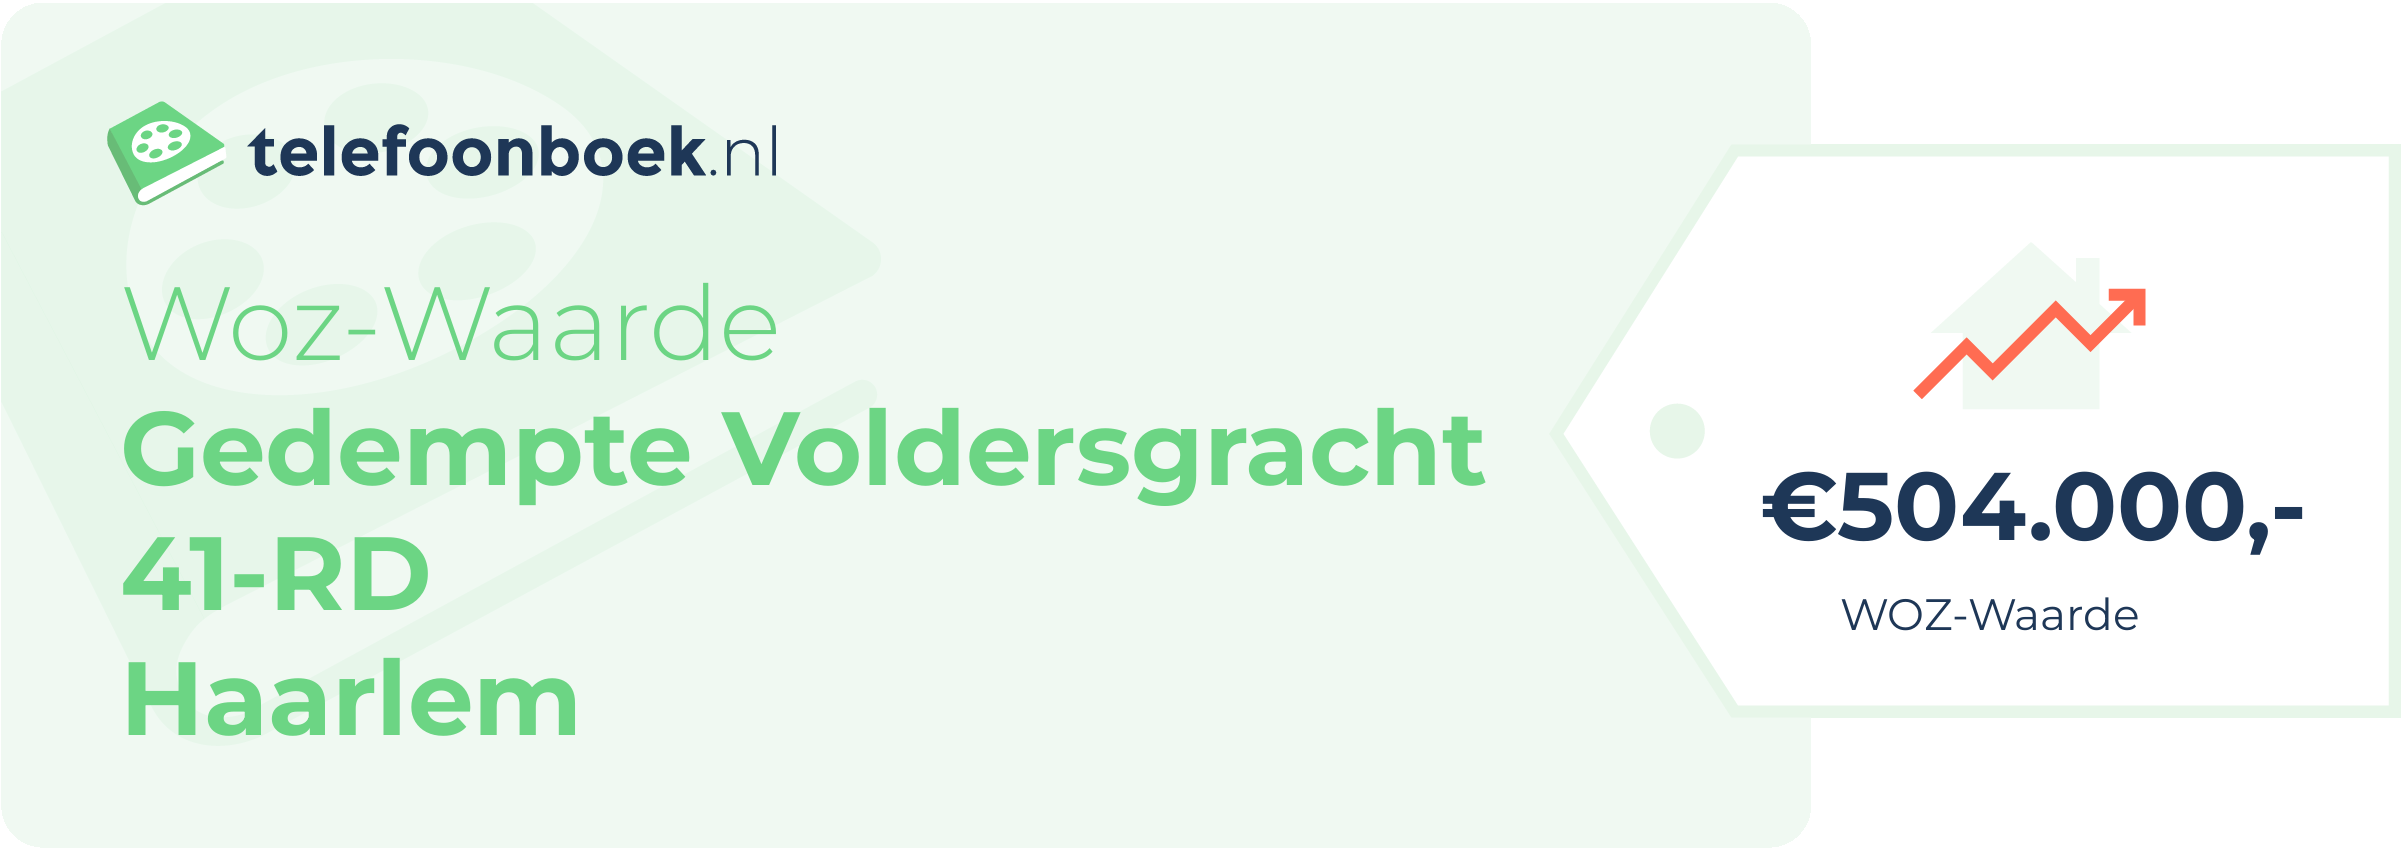 WOZ-waarde Gedempte Voldersgracht 41-RD Haarlem